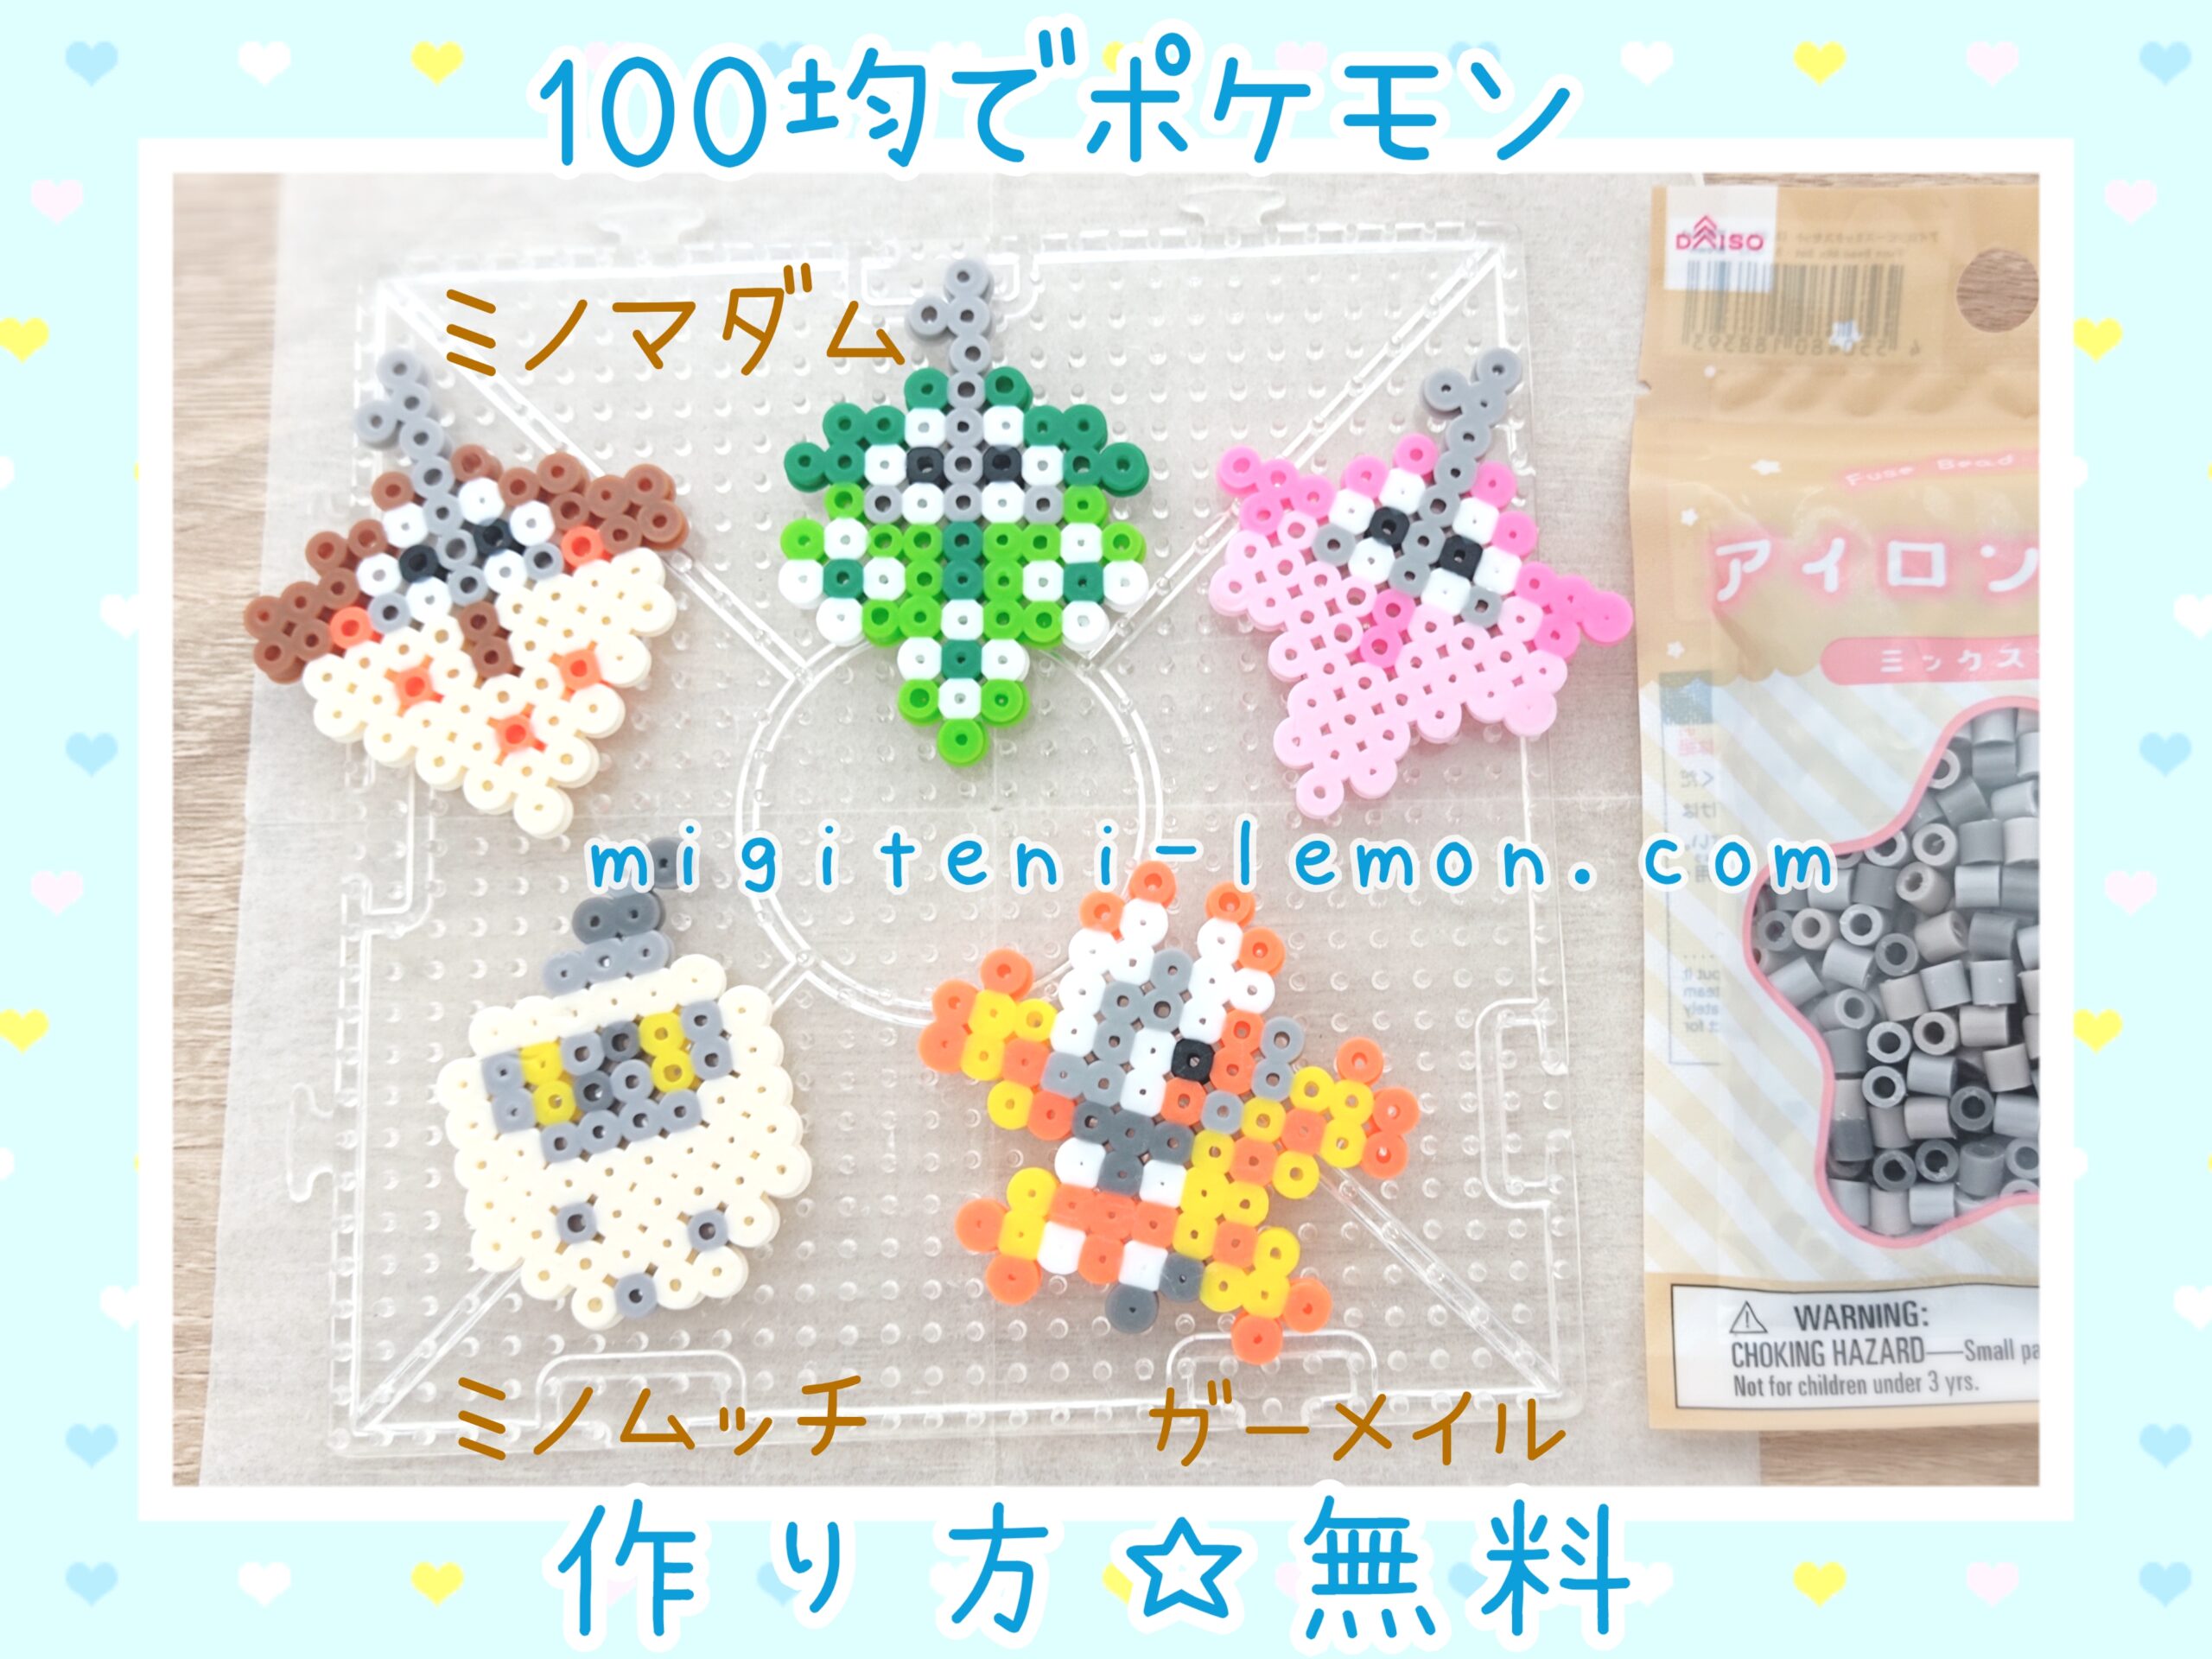 minomadam-wormadam-gamale-mothim-free-pokemon-beads-zuan